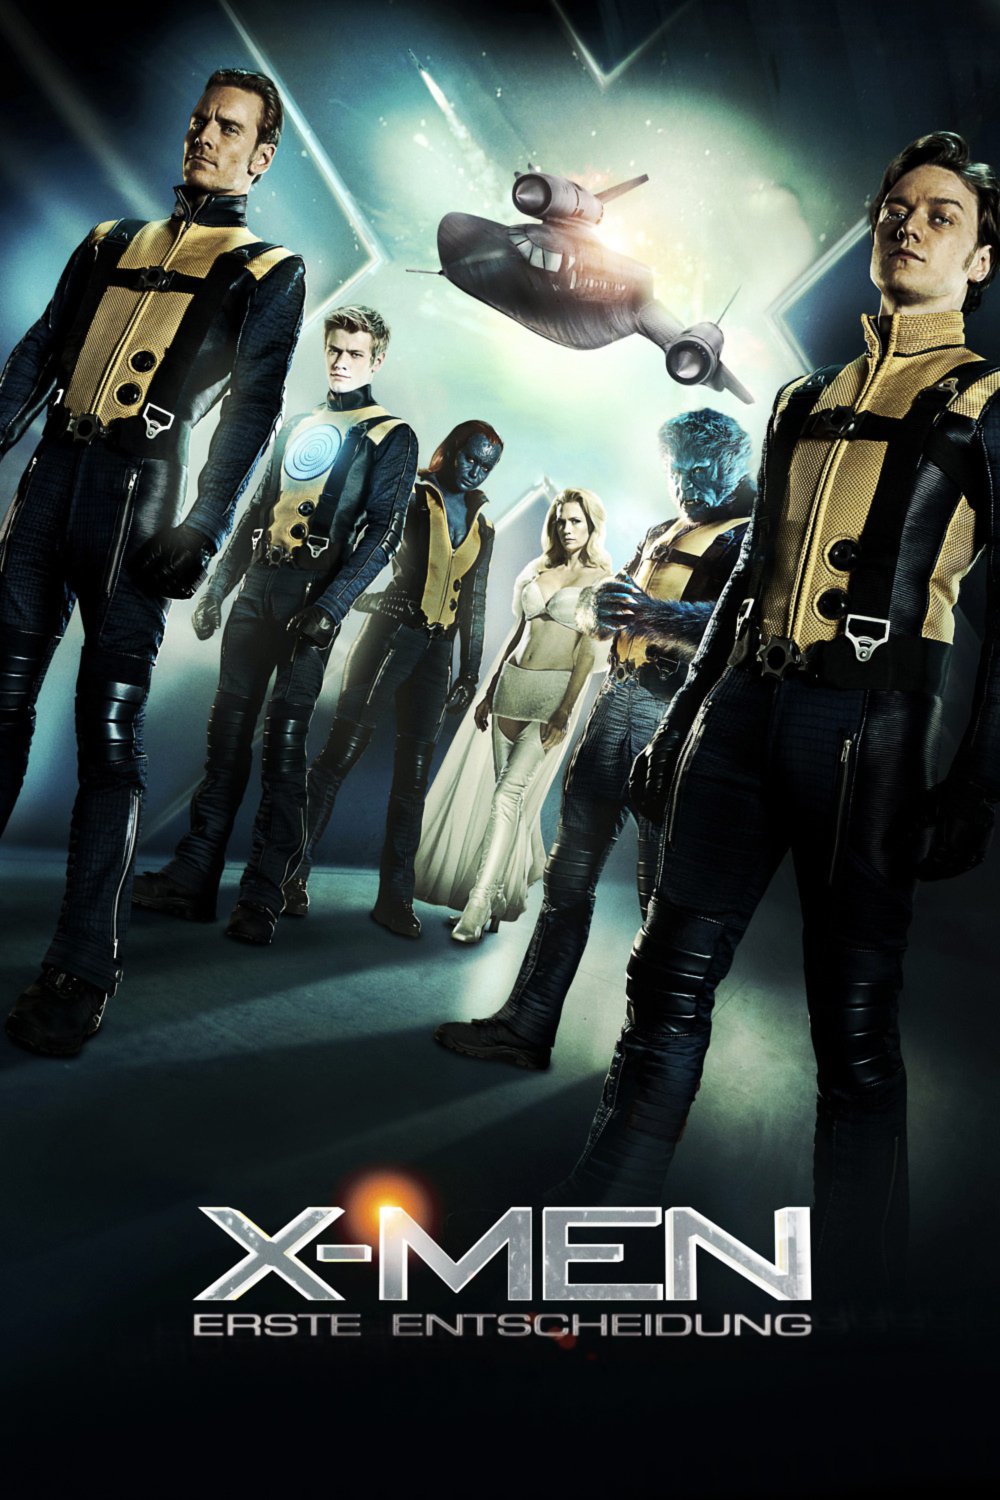 Plakat von "X-Men - Erste Entscheidung"